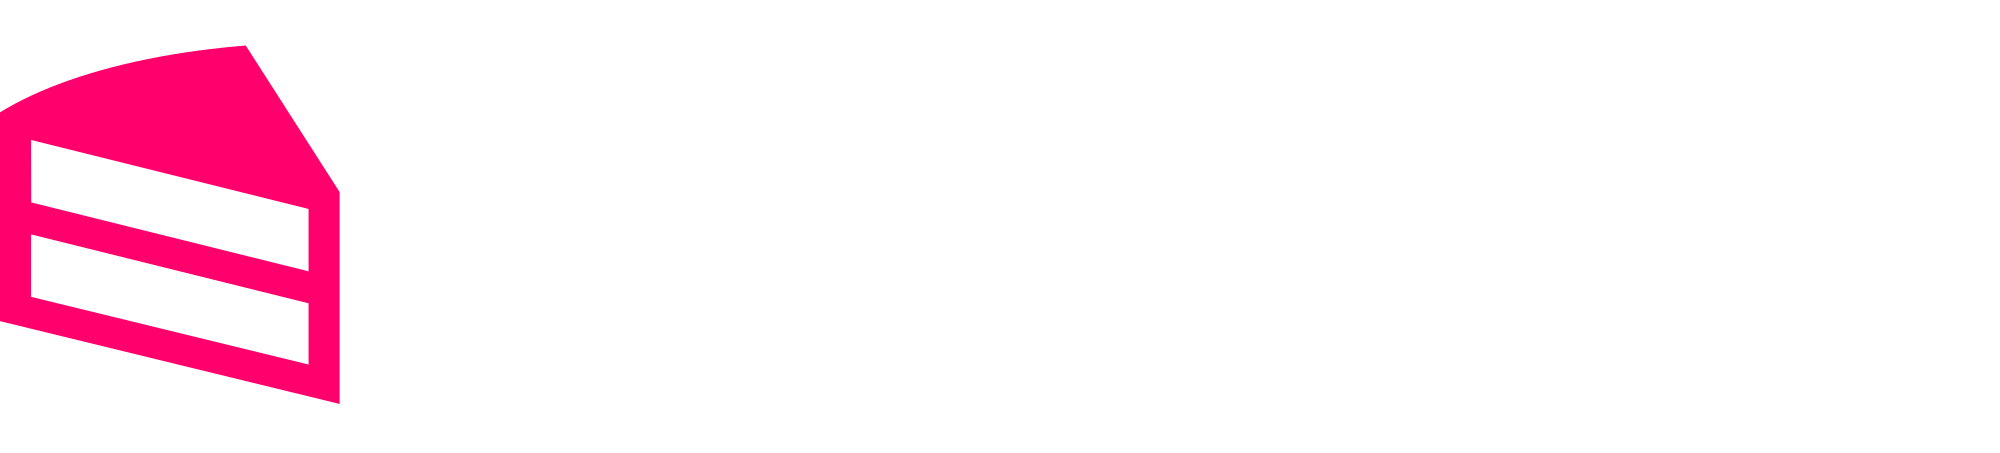 metacake logo